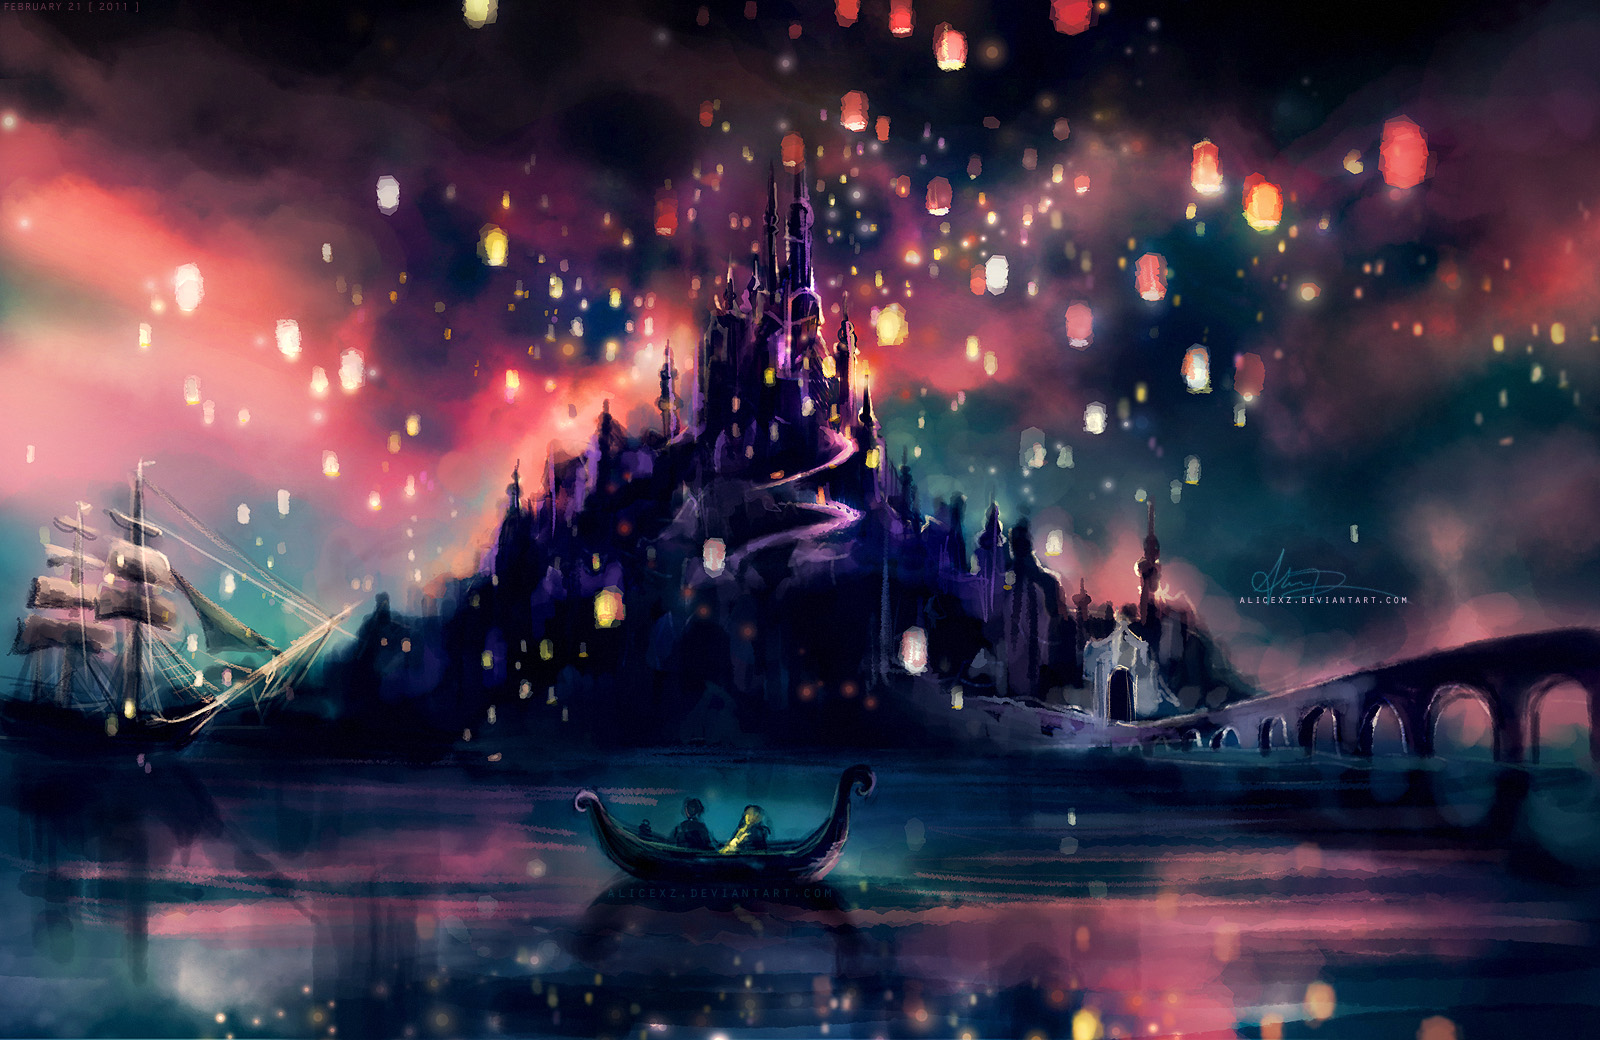 Free Disney Desktop Wallpaper: Tận hưởng trọn vẹn không gian làm việc với những bức hình nền desktop Disney miễn phí. Với đa dạng các chủ đề và nhân vật quen thuộc, bạn có thể dễ dàng tìm được lựa chọn phù hợp để trang trí cho máy tính của mình.